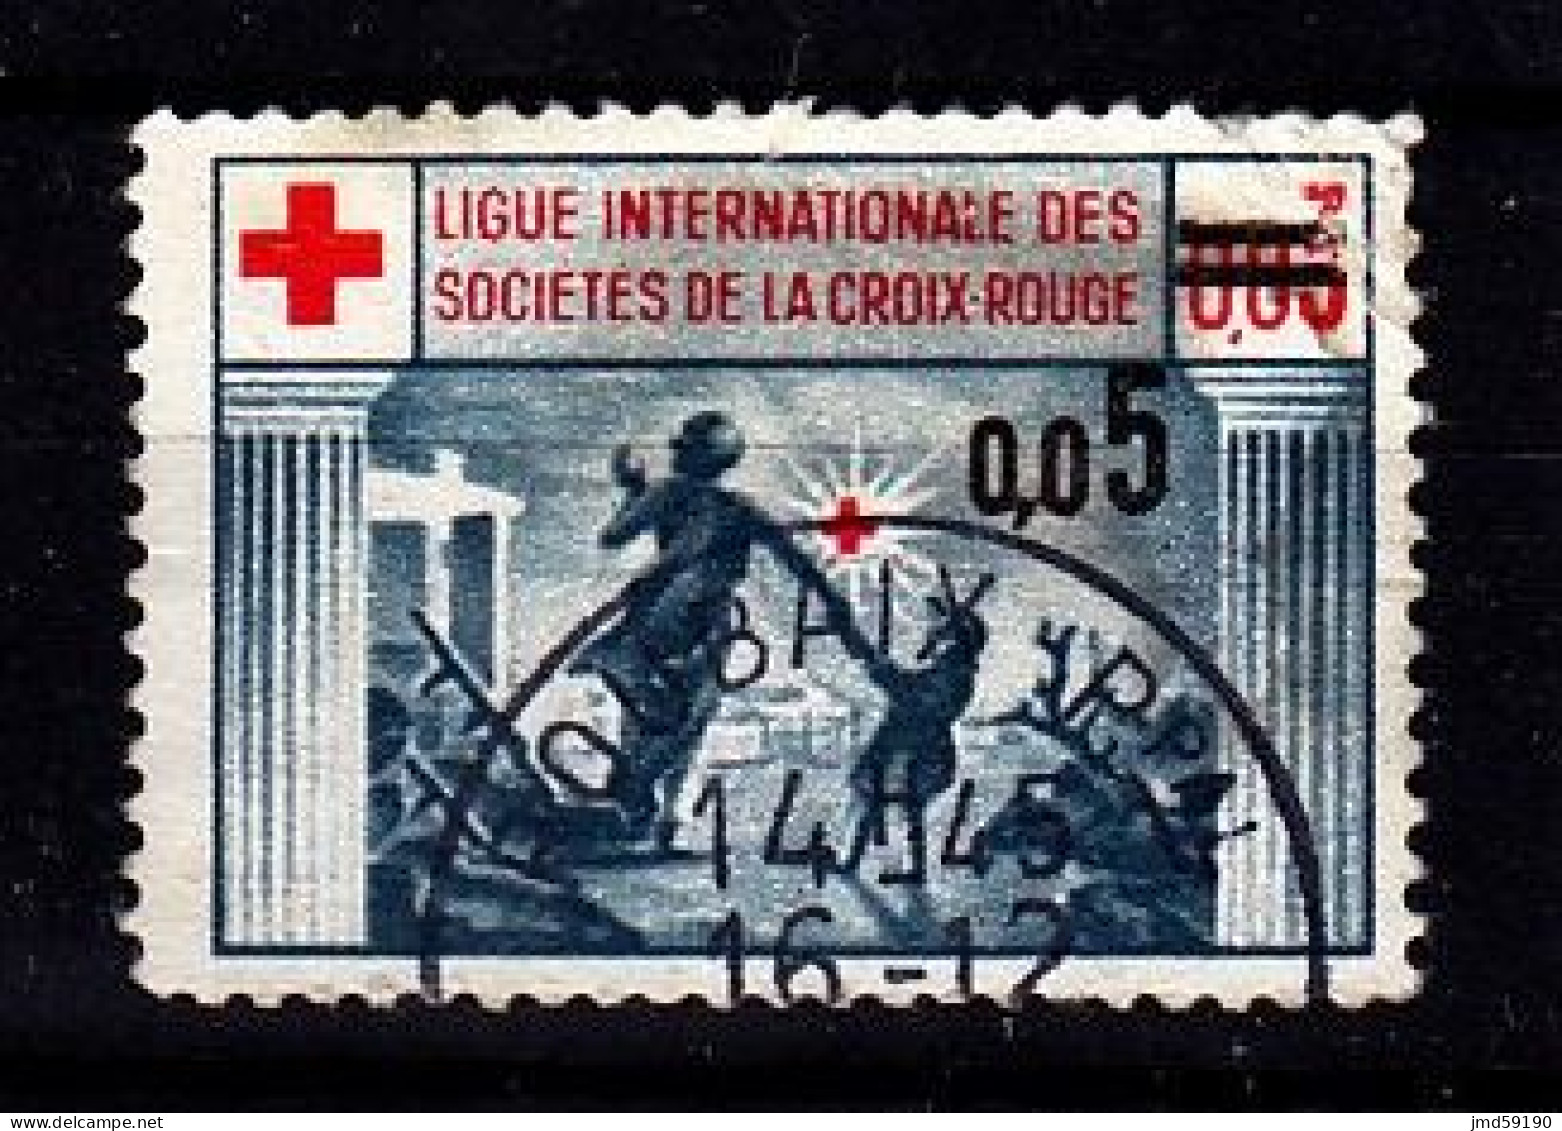 France - Vignette Oblitérée Ligue Internationale Des Sociétés De La Croix Rouge Avec Surcharge 0.05 - Croix Rouge